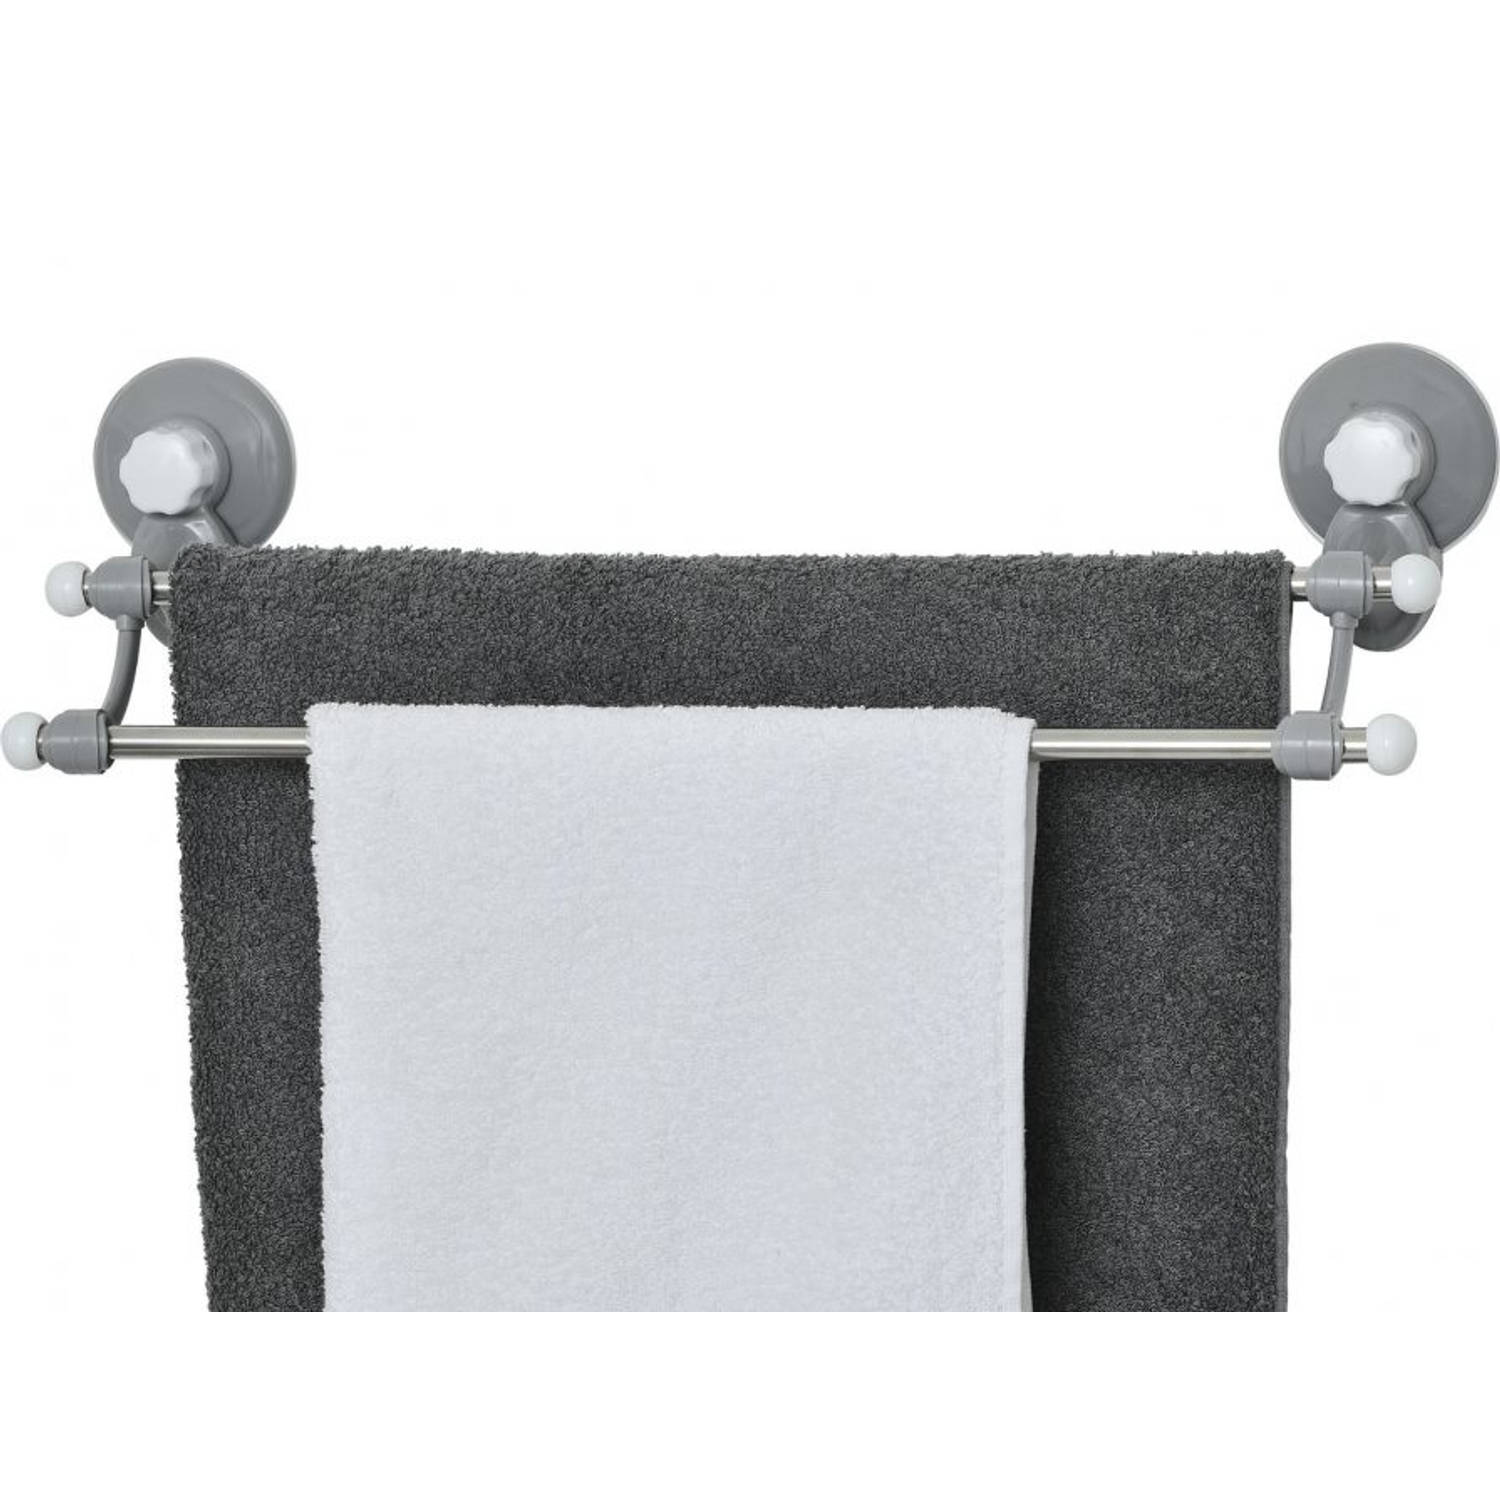 Gebor - Zelfklevend Handdoekenrek Met 2 Handdoek Ophang Stangen - Muur / Wand Bevestiging Met Zuignappen -